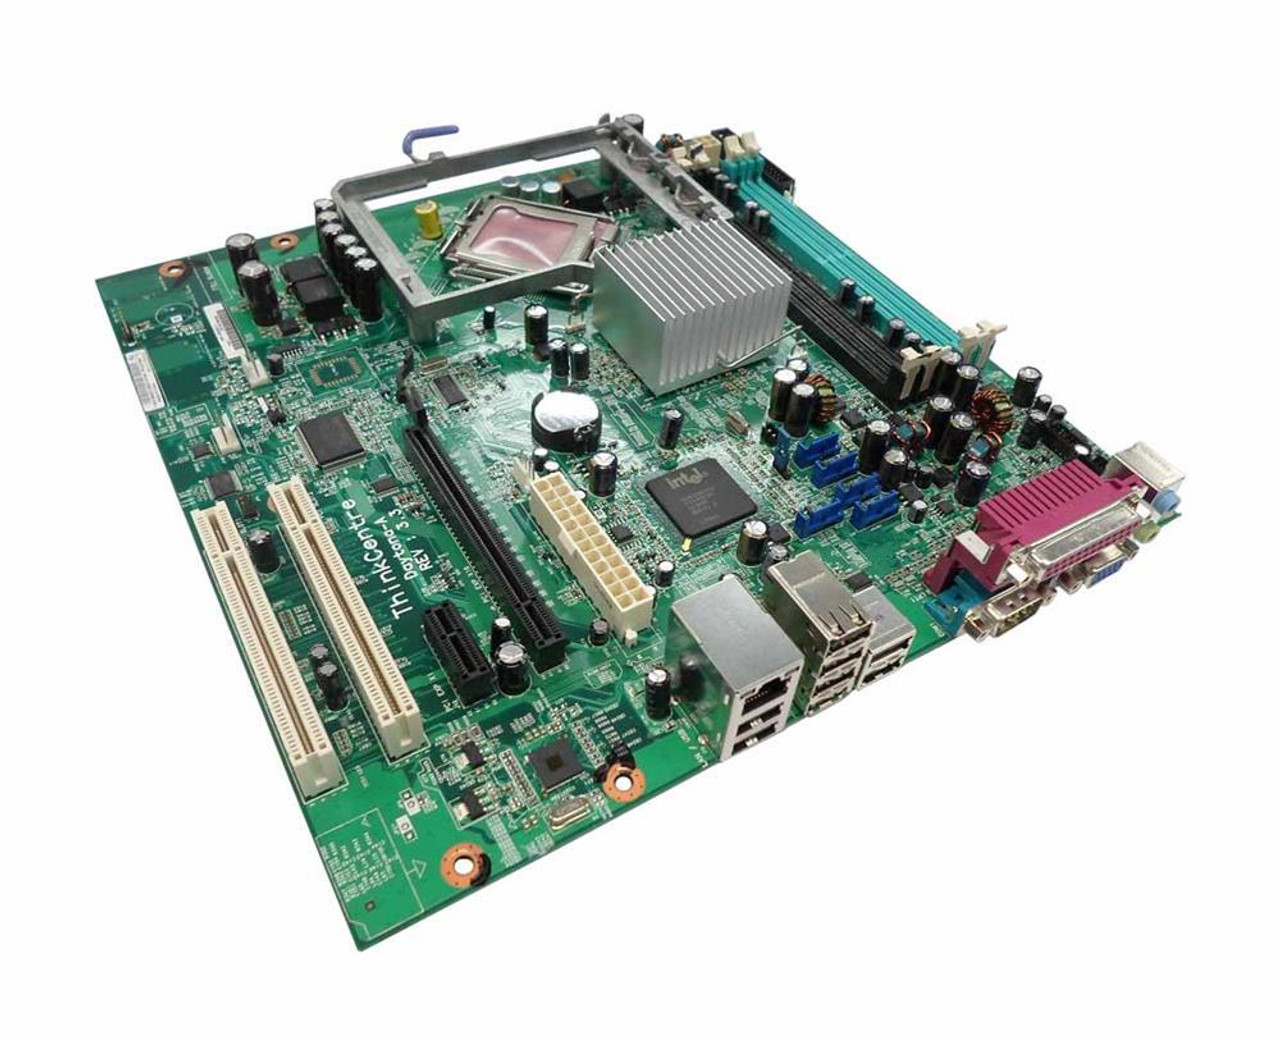 42Y9941 Lenovo ThinkCentre M55 Core 2 Duo System Board W/O CPU